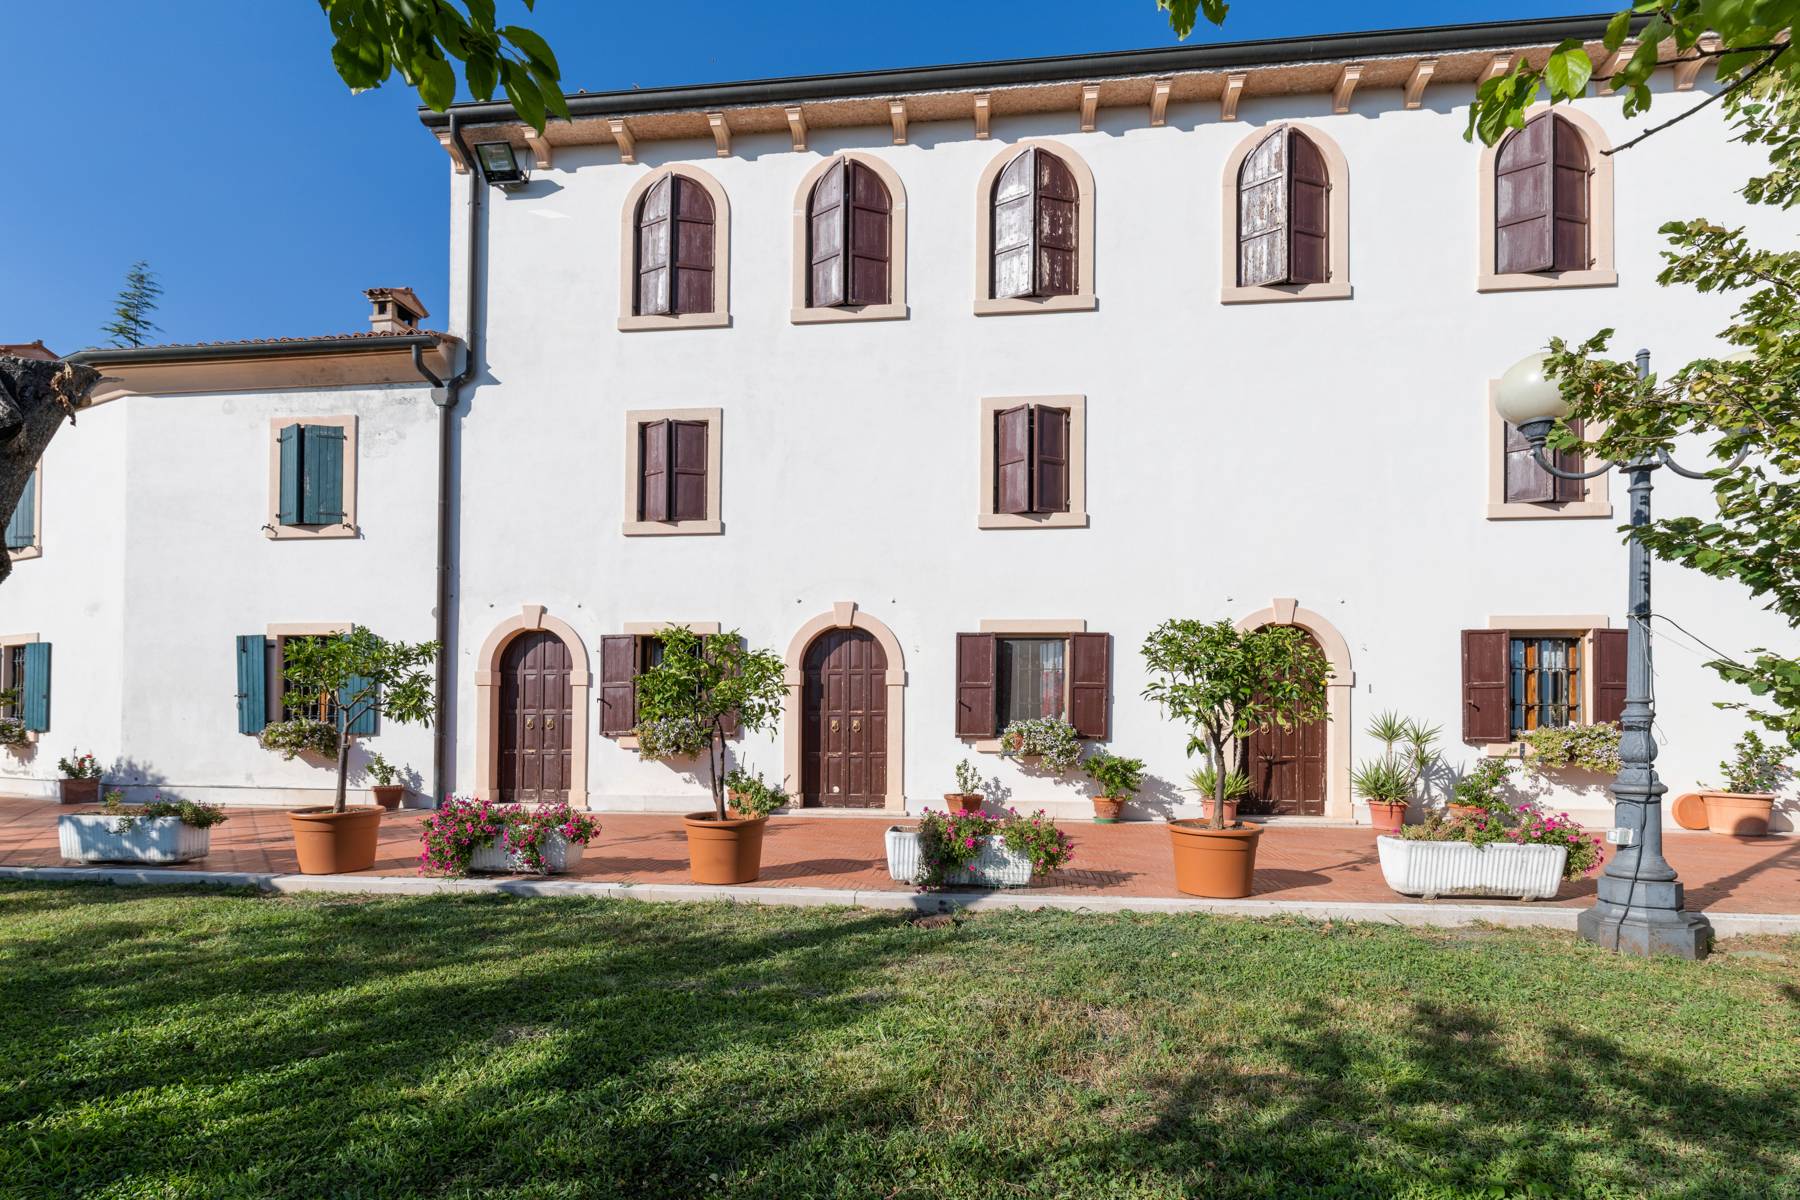 Villa in Vendita a San Martino Buon Albergo: 5 locali, 900 mq - Foto 5